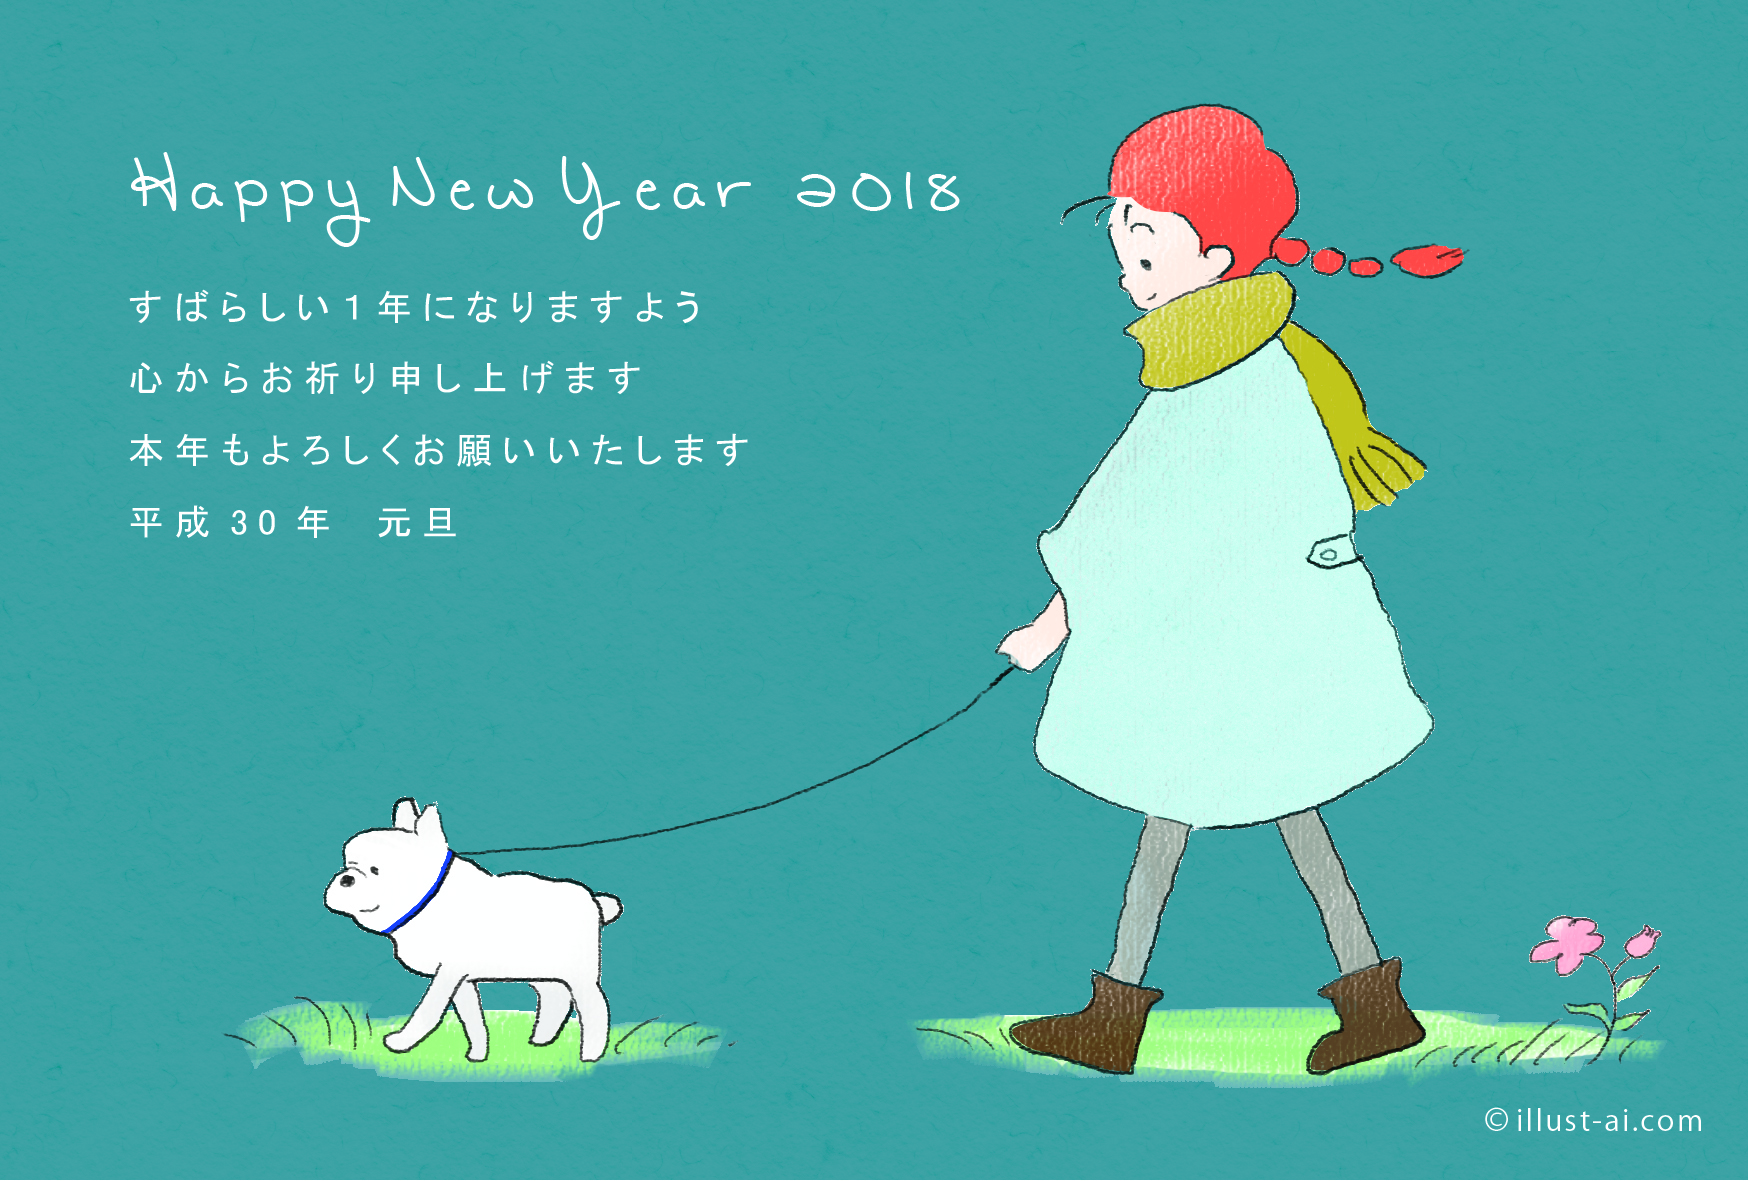 年賀状 戌年 ほっこりする犬を散歩する少女 年賀状2018無料イラスト